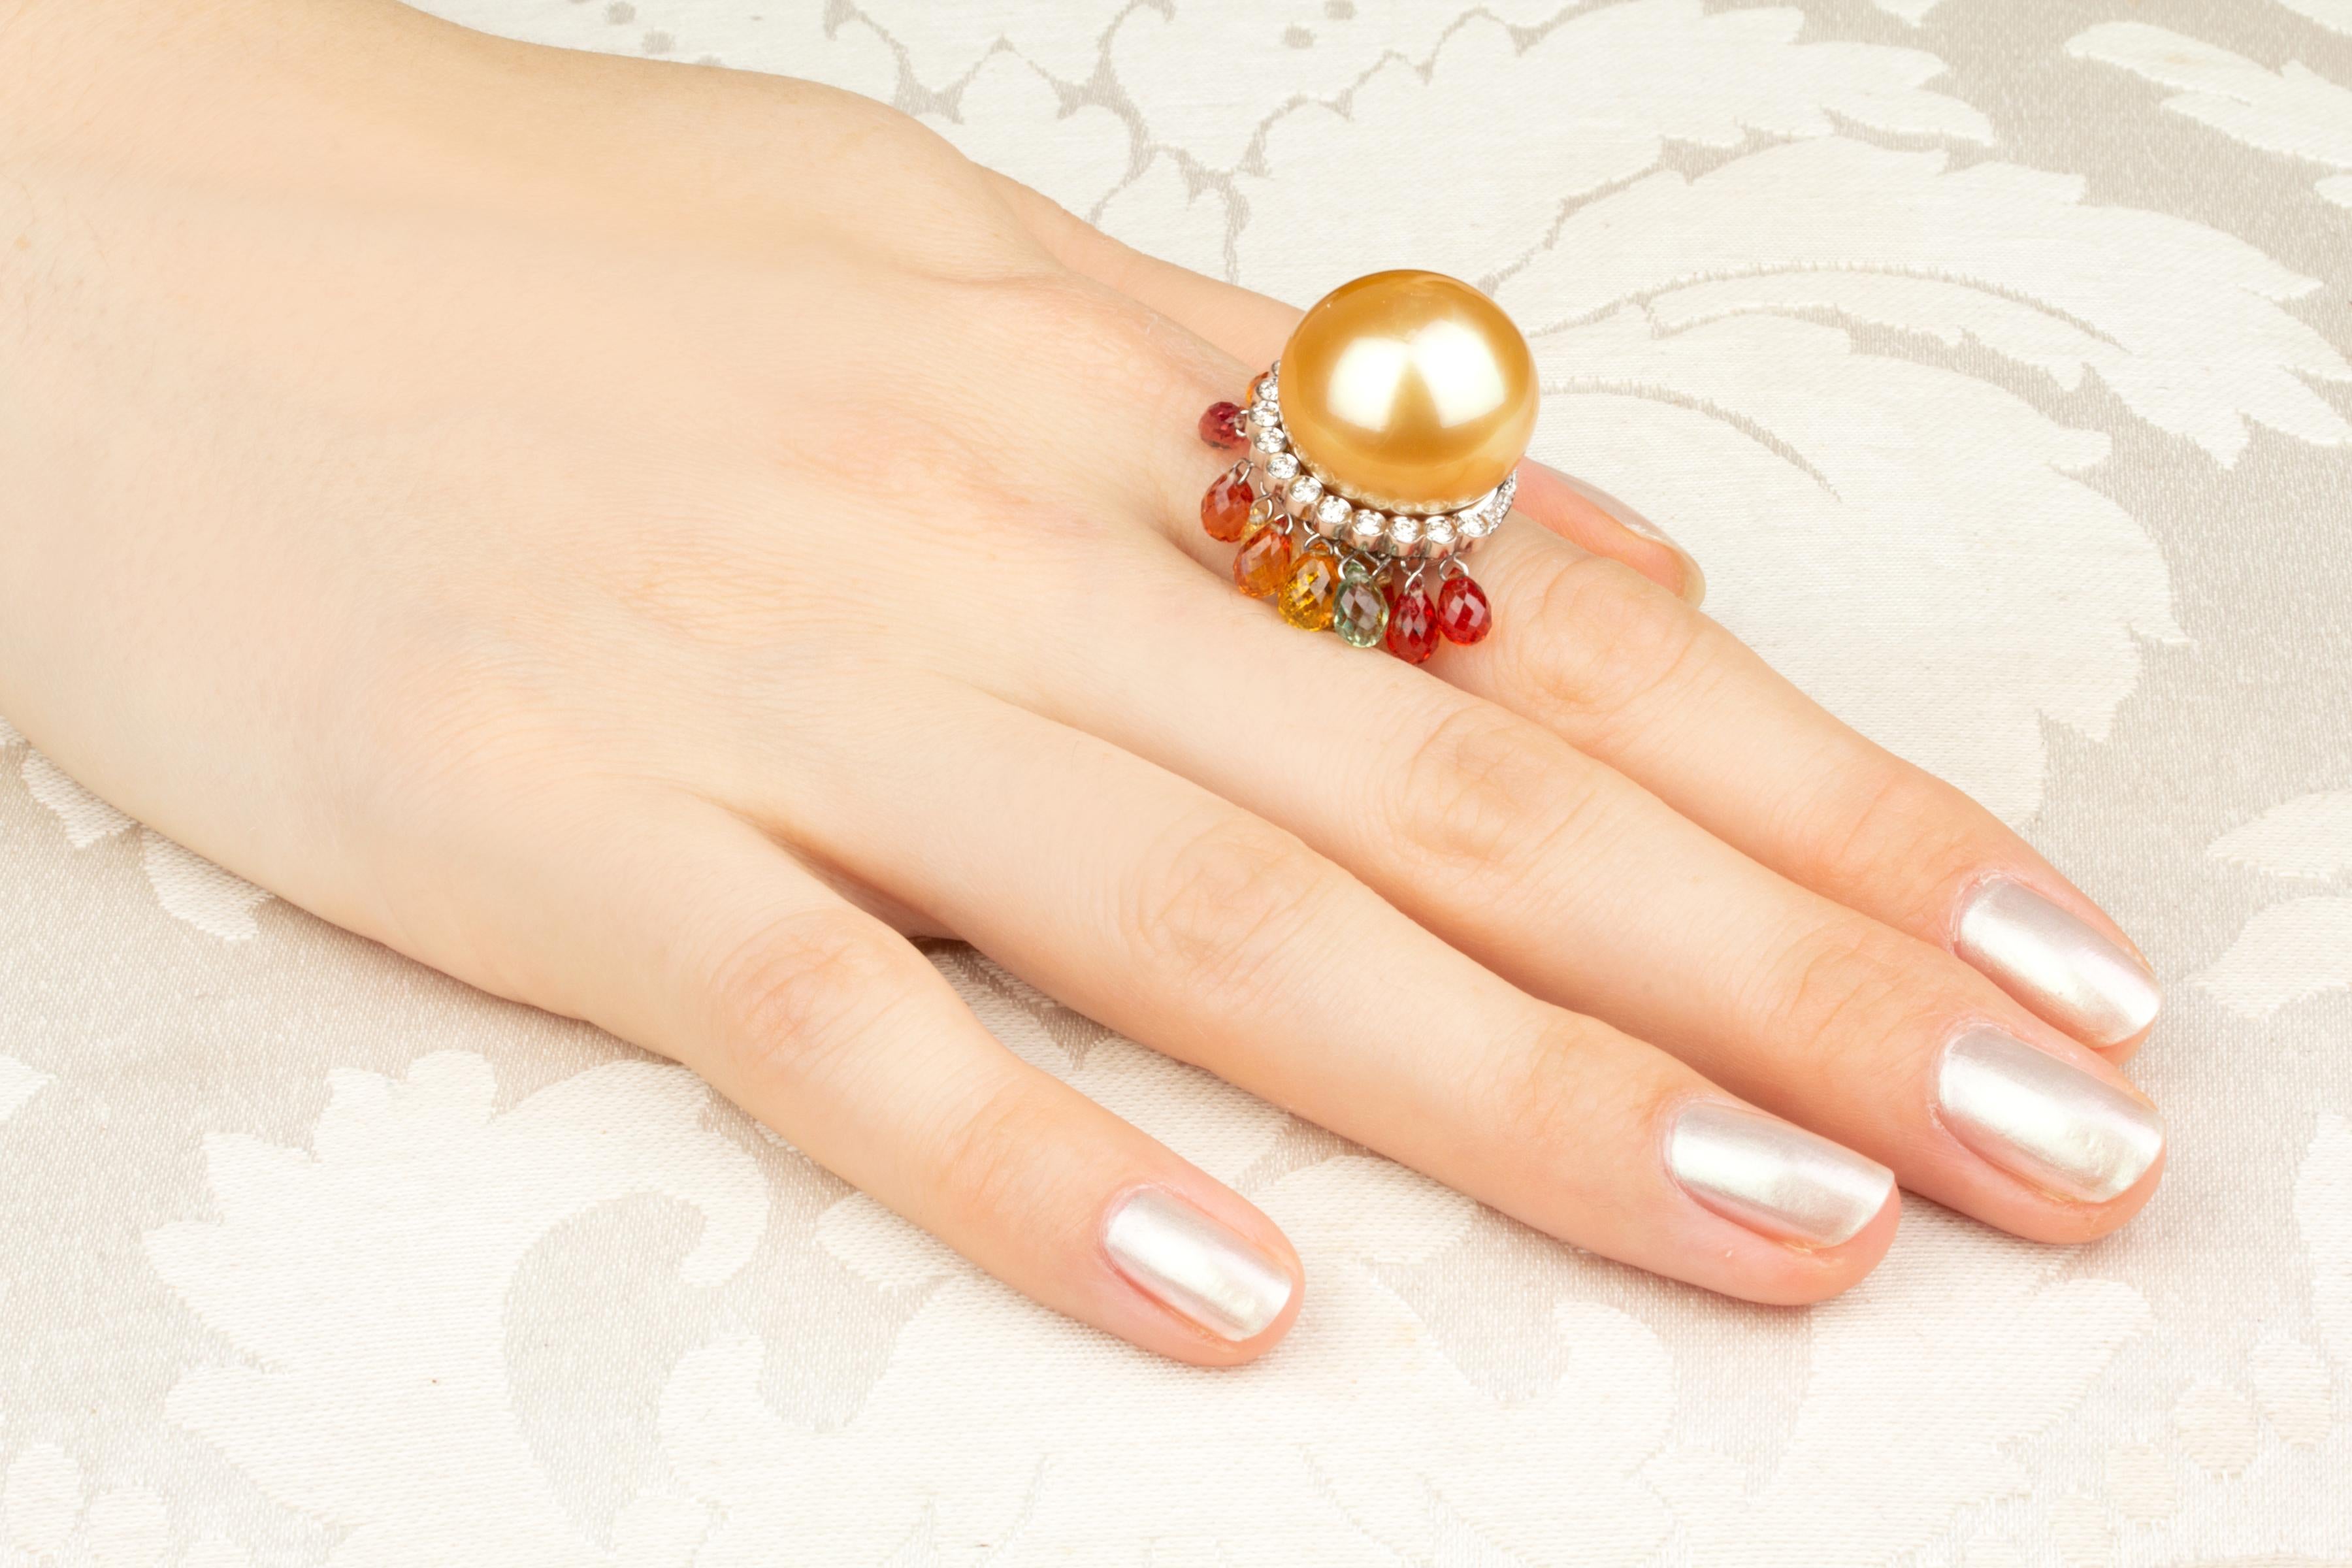 Dieser goldene Perlen- und Diamant-Cocktailring ist mit einer prächtigen Perle von der seltenen Größe von 18 mm Durchmesser ausgestattet. Die Perle ist naturbelassen. Er hat ein feines Perlmutt und seine natürliche Farbe und sein Glanz wurden in